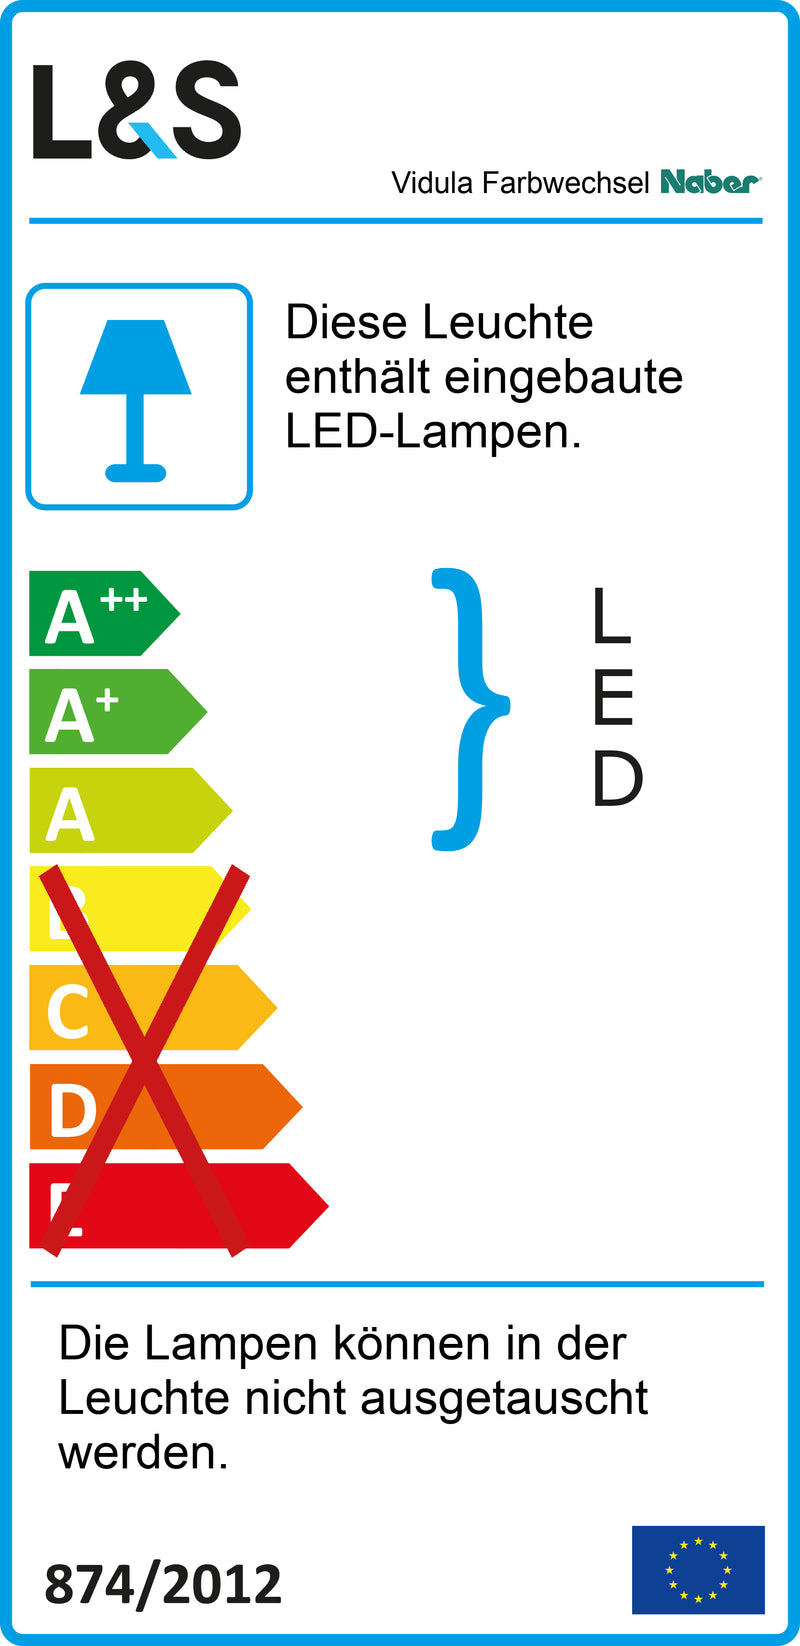 E-Label zu Zeichnung zu Vidula Farbwechsel LED als Variante L 900 mm, edelstahlfarbig von Naber GmbH in der Kategorie Lichttechnik in Österreich auf conceptshop.at